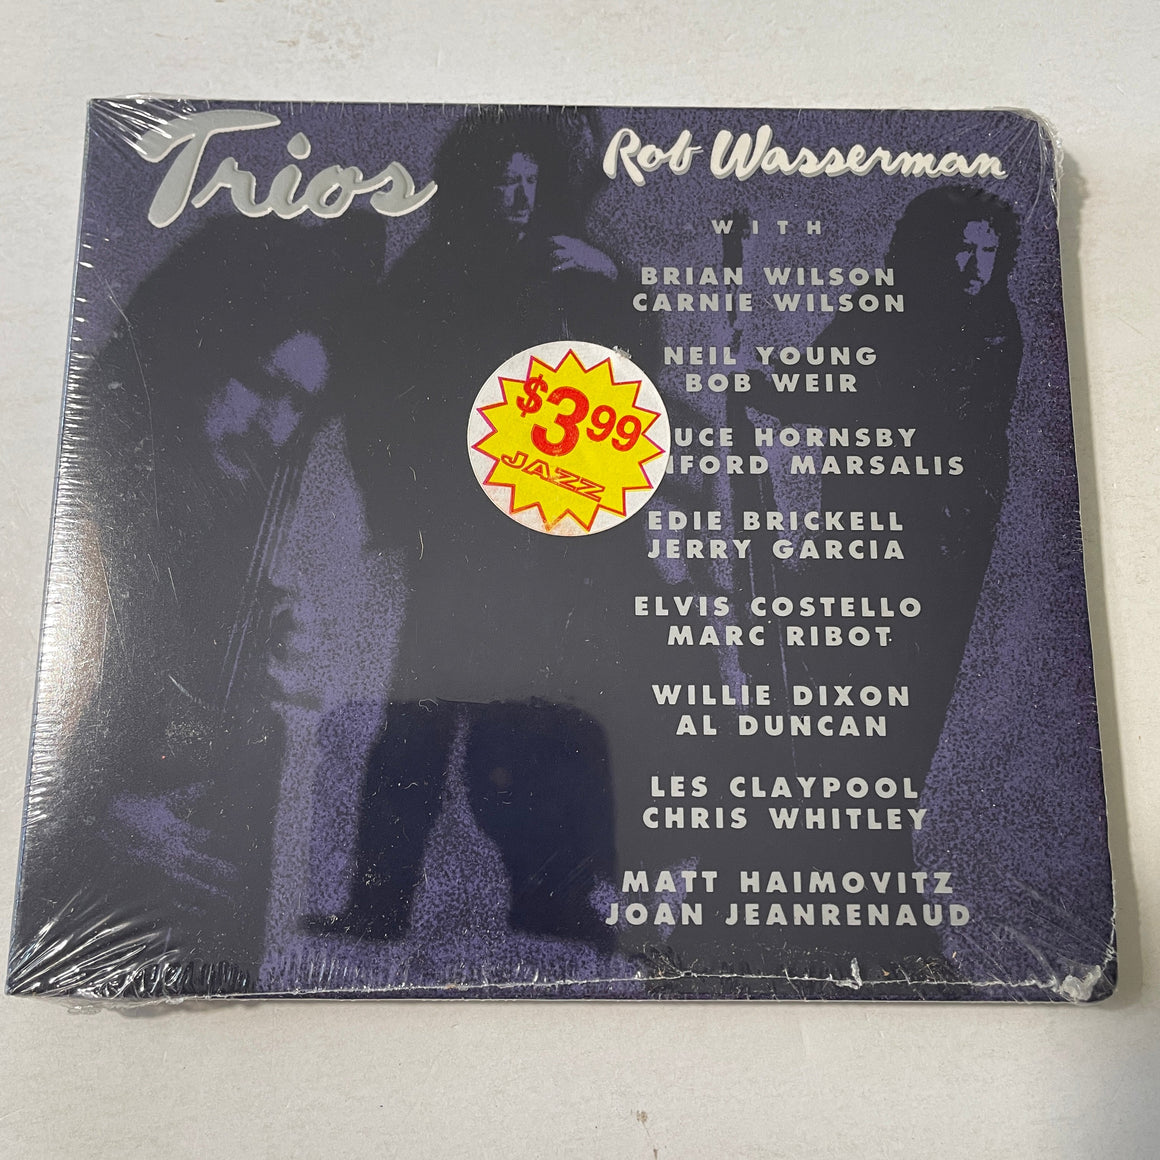 Rob Wasserman Trios New Sealed CD M\M